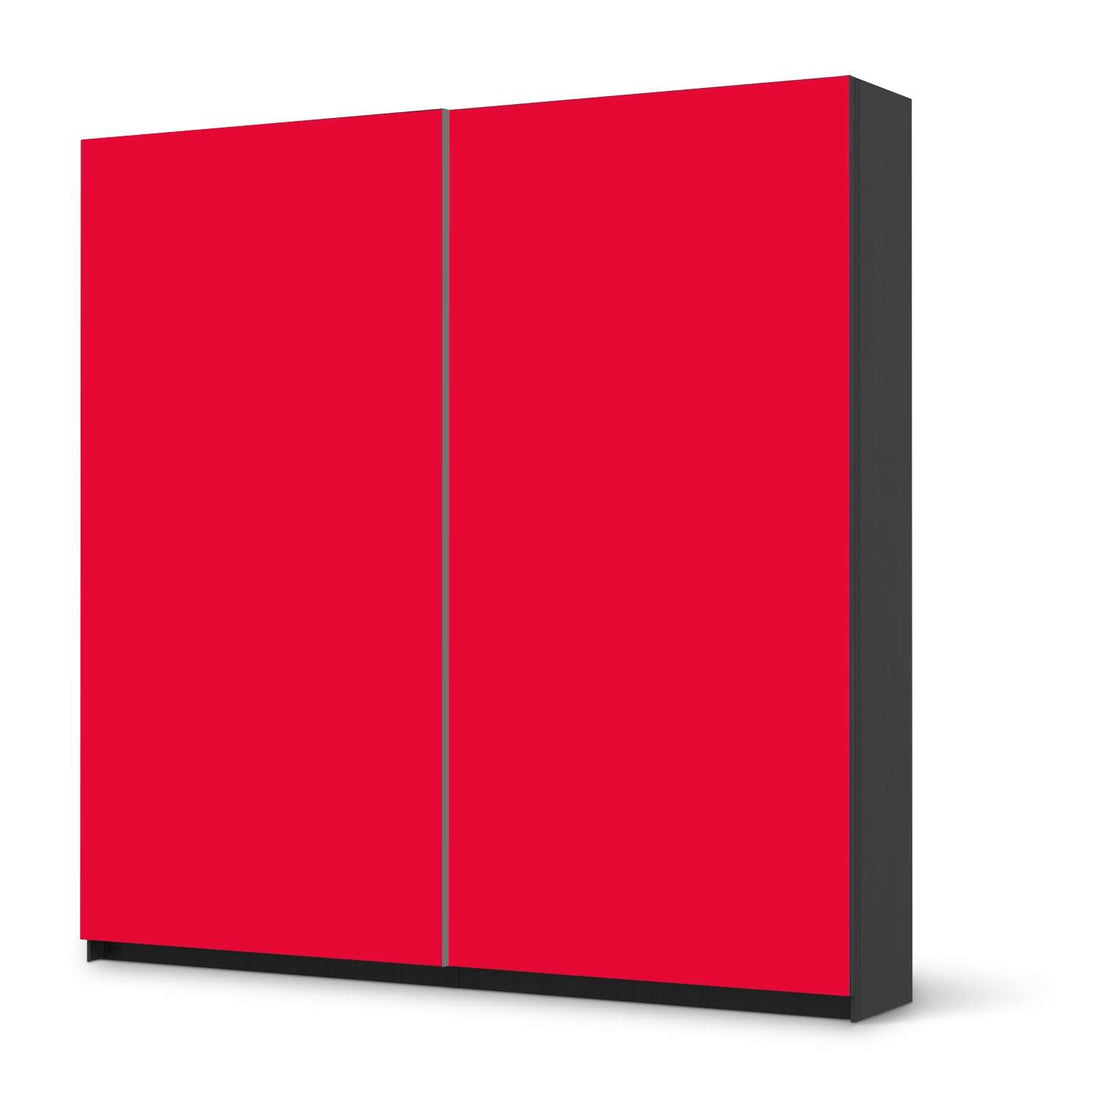 Möbel Klebefolie Rot Light - IKEA Pax Schrank 201 cm Höhe - Schiebetür - schwarz